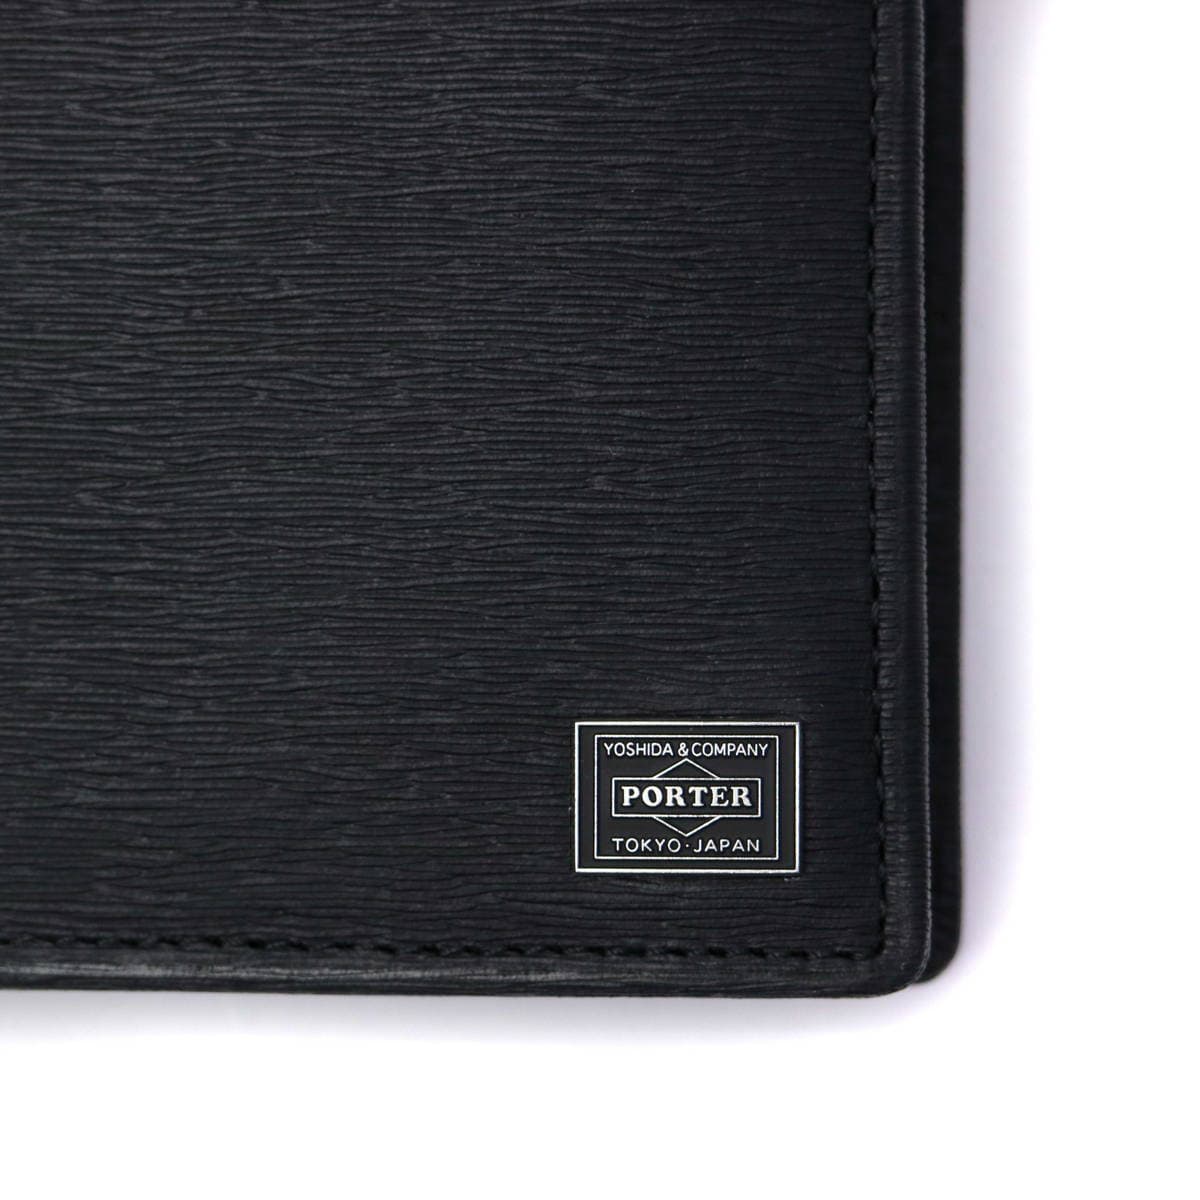 吉田カバン カレント 二つ折り財布 二層式 052-02203 ブラック